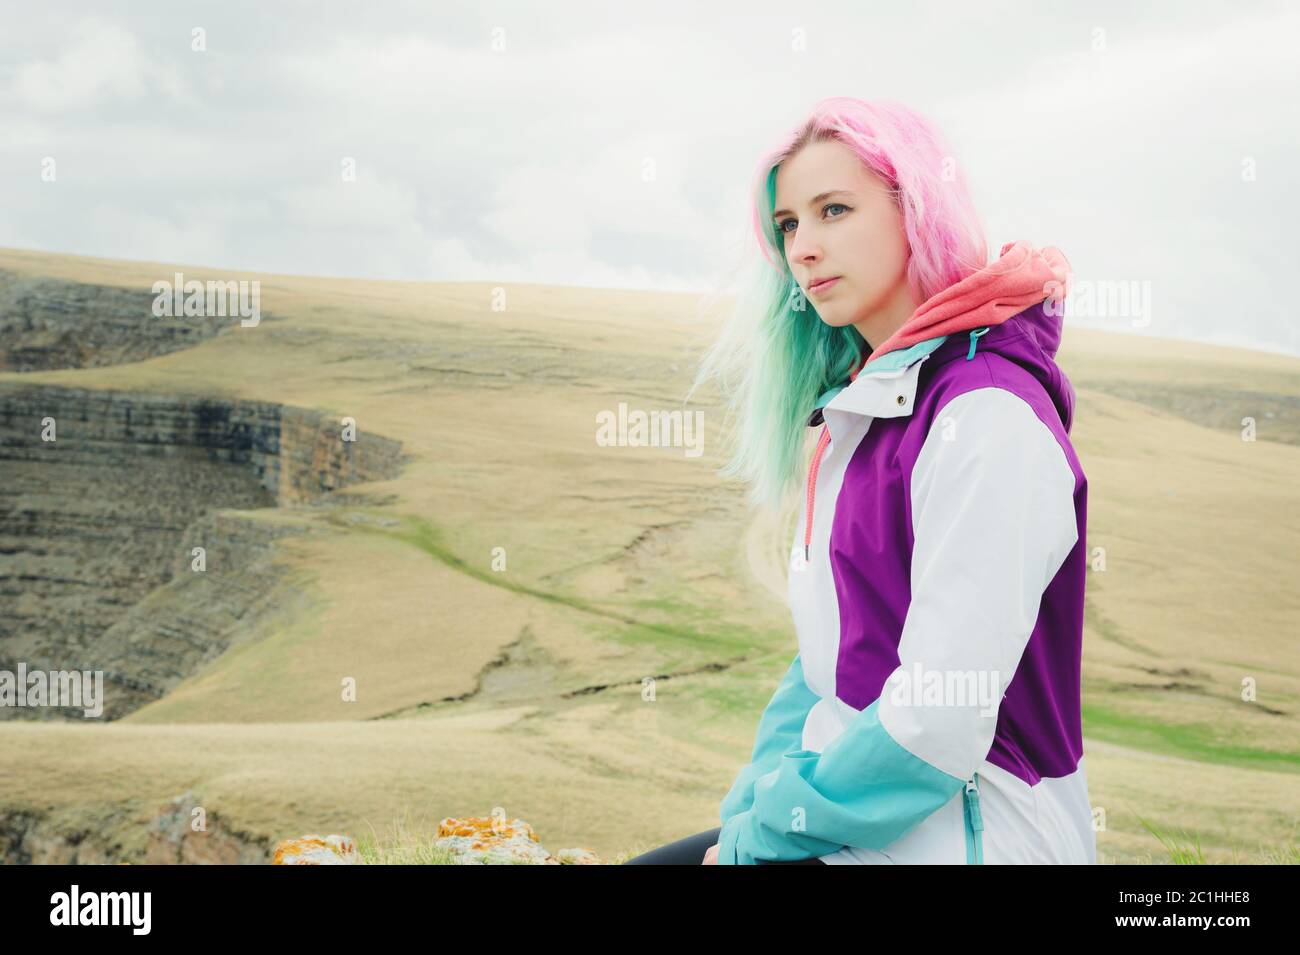 Une jeune fille-voyageur aux cheveux multicolores est assise sur le bord d'une falaise et regarde à l'horizon sur un fond de plateau rocheux Banque D'Images